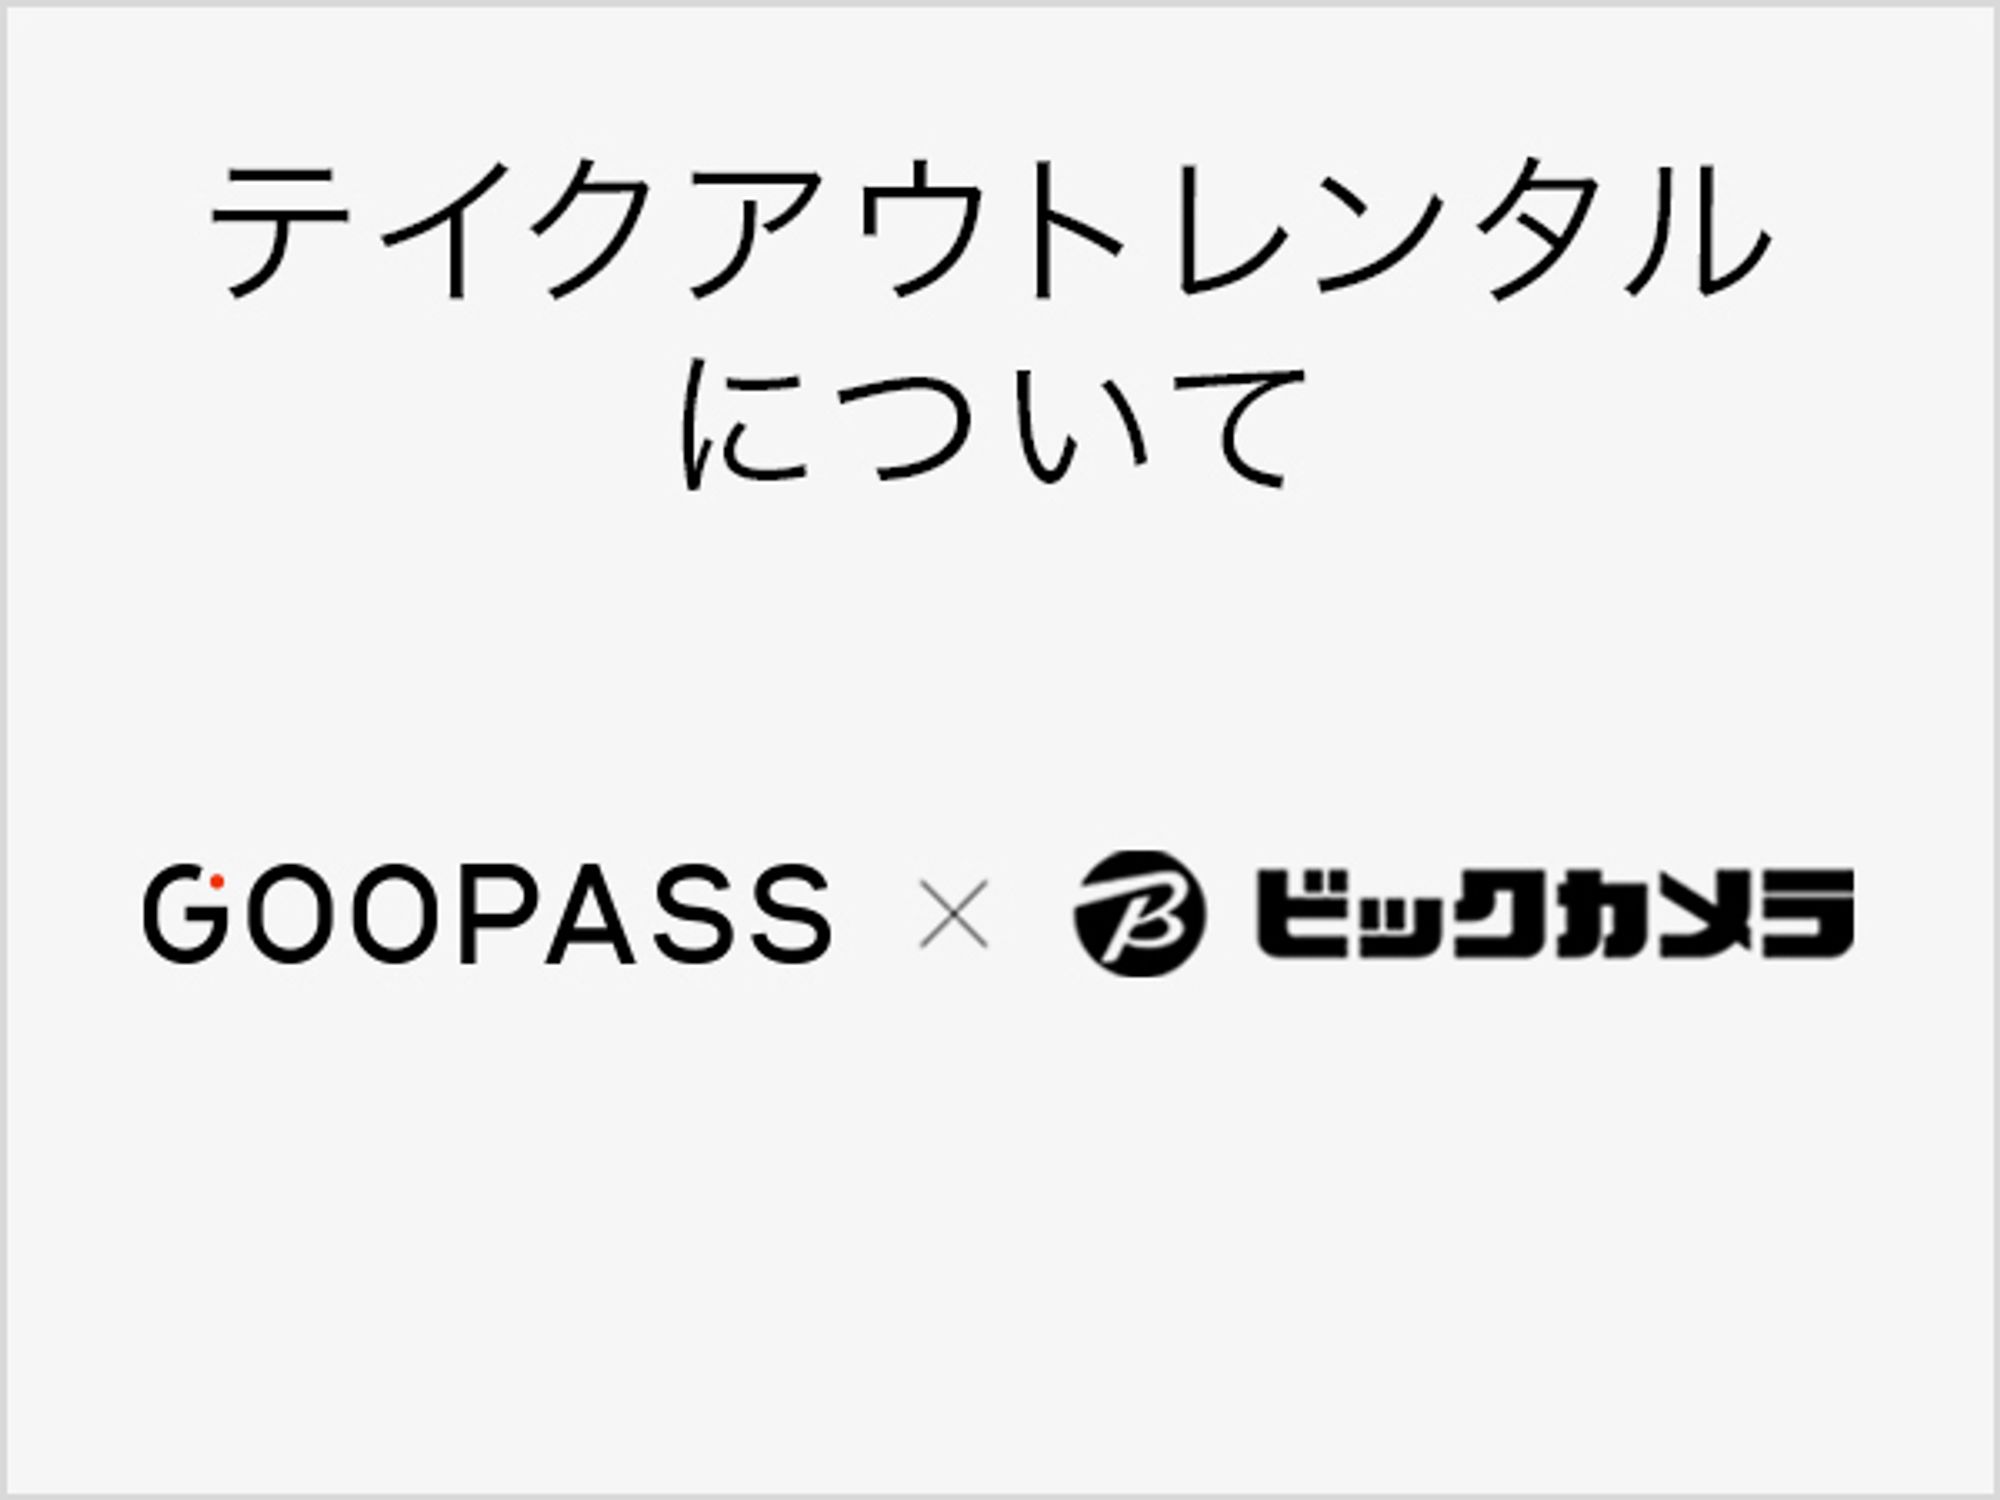 https://support.goopass.jp/takeoutrental